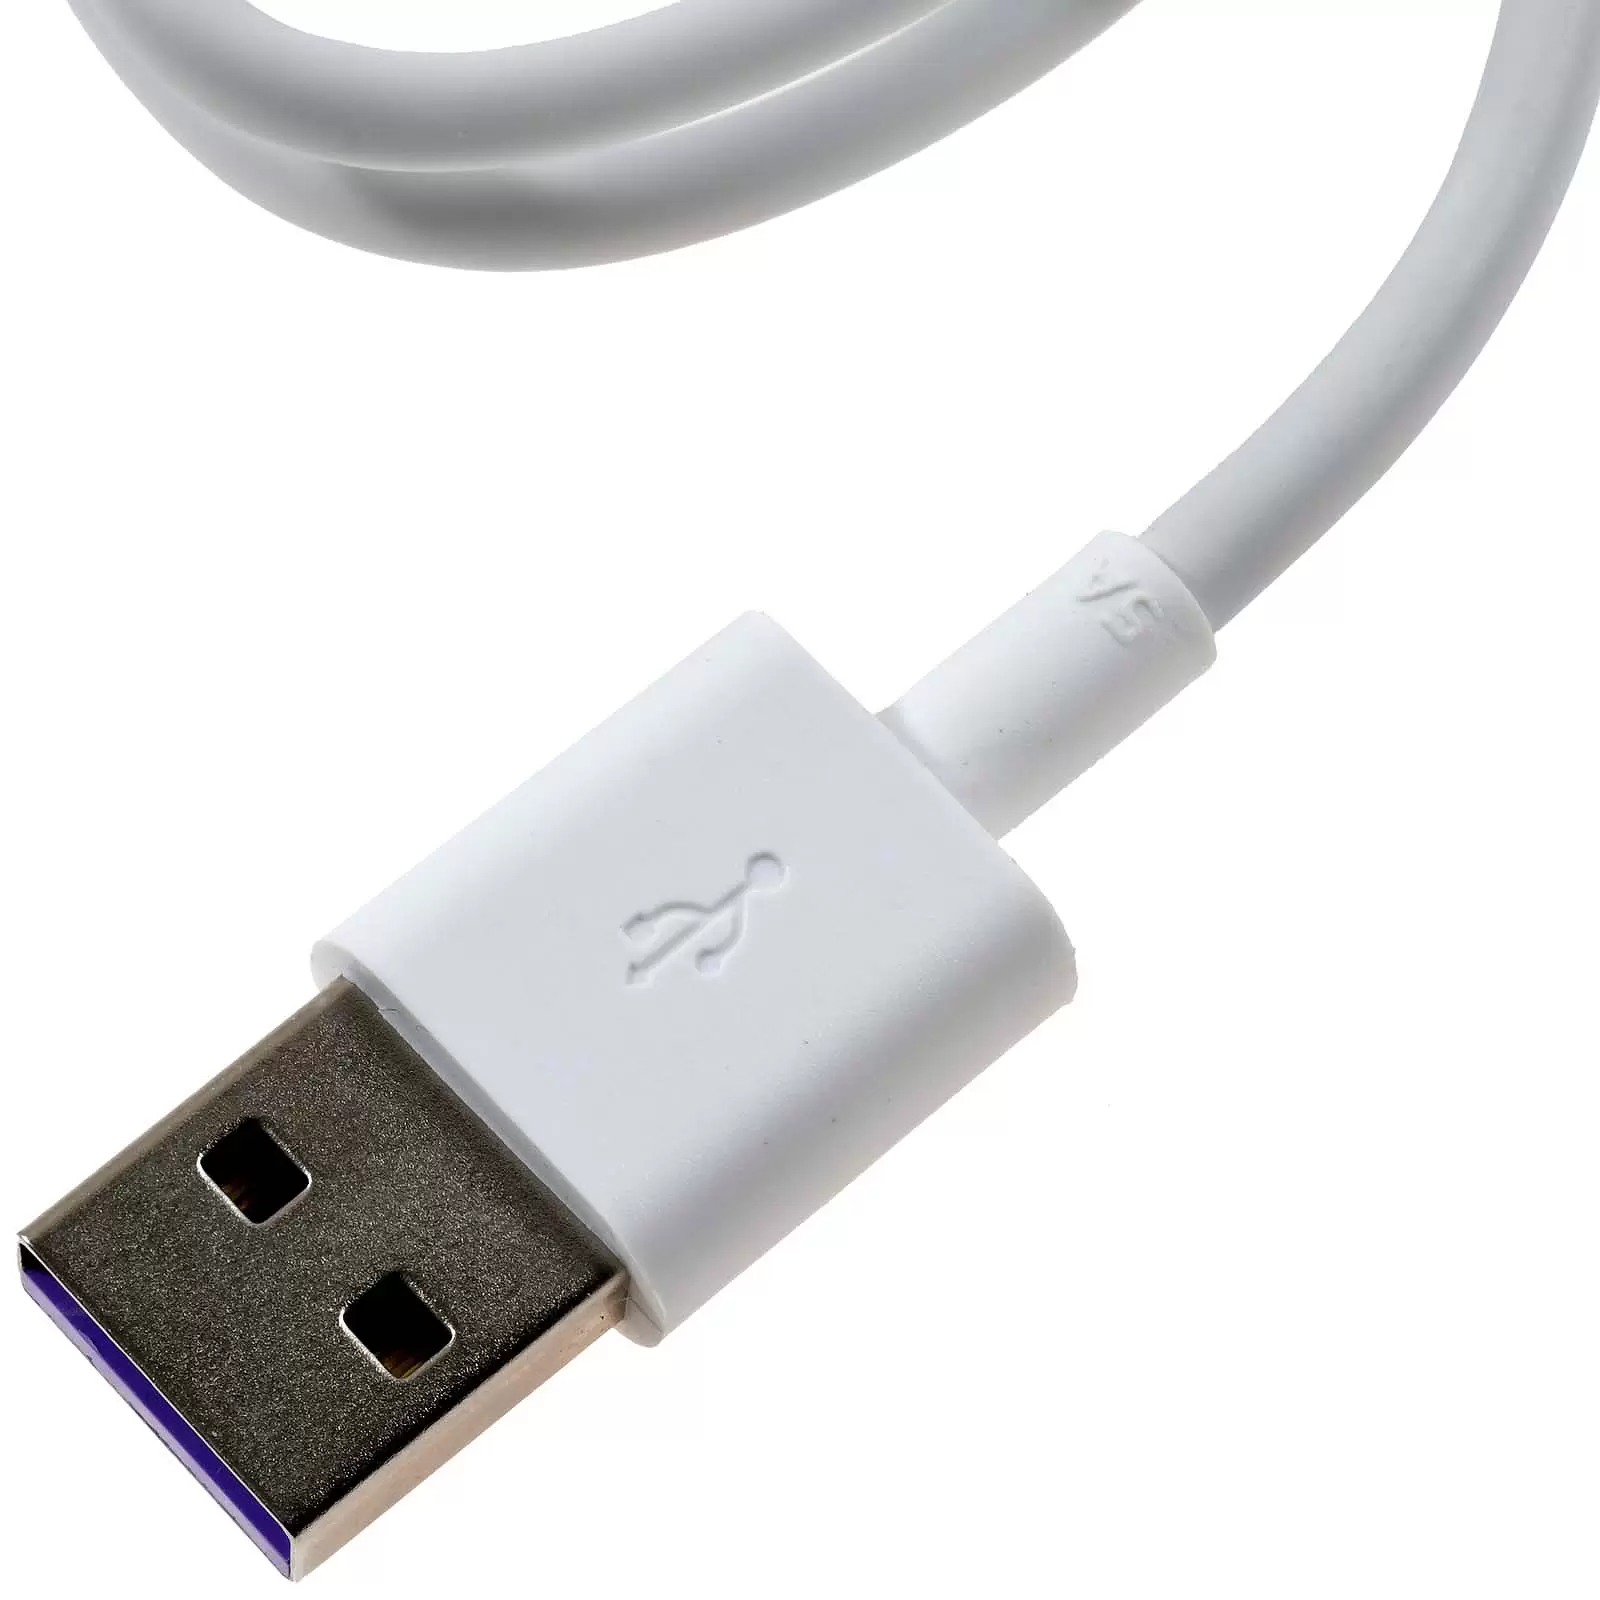 Huawei HL-1289 USB auf-USB-C Datenkabel Ladekabel für Mate 9 weiß 1m